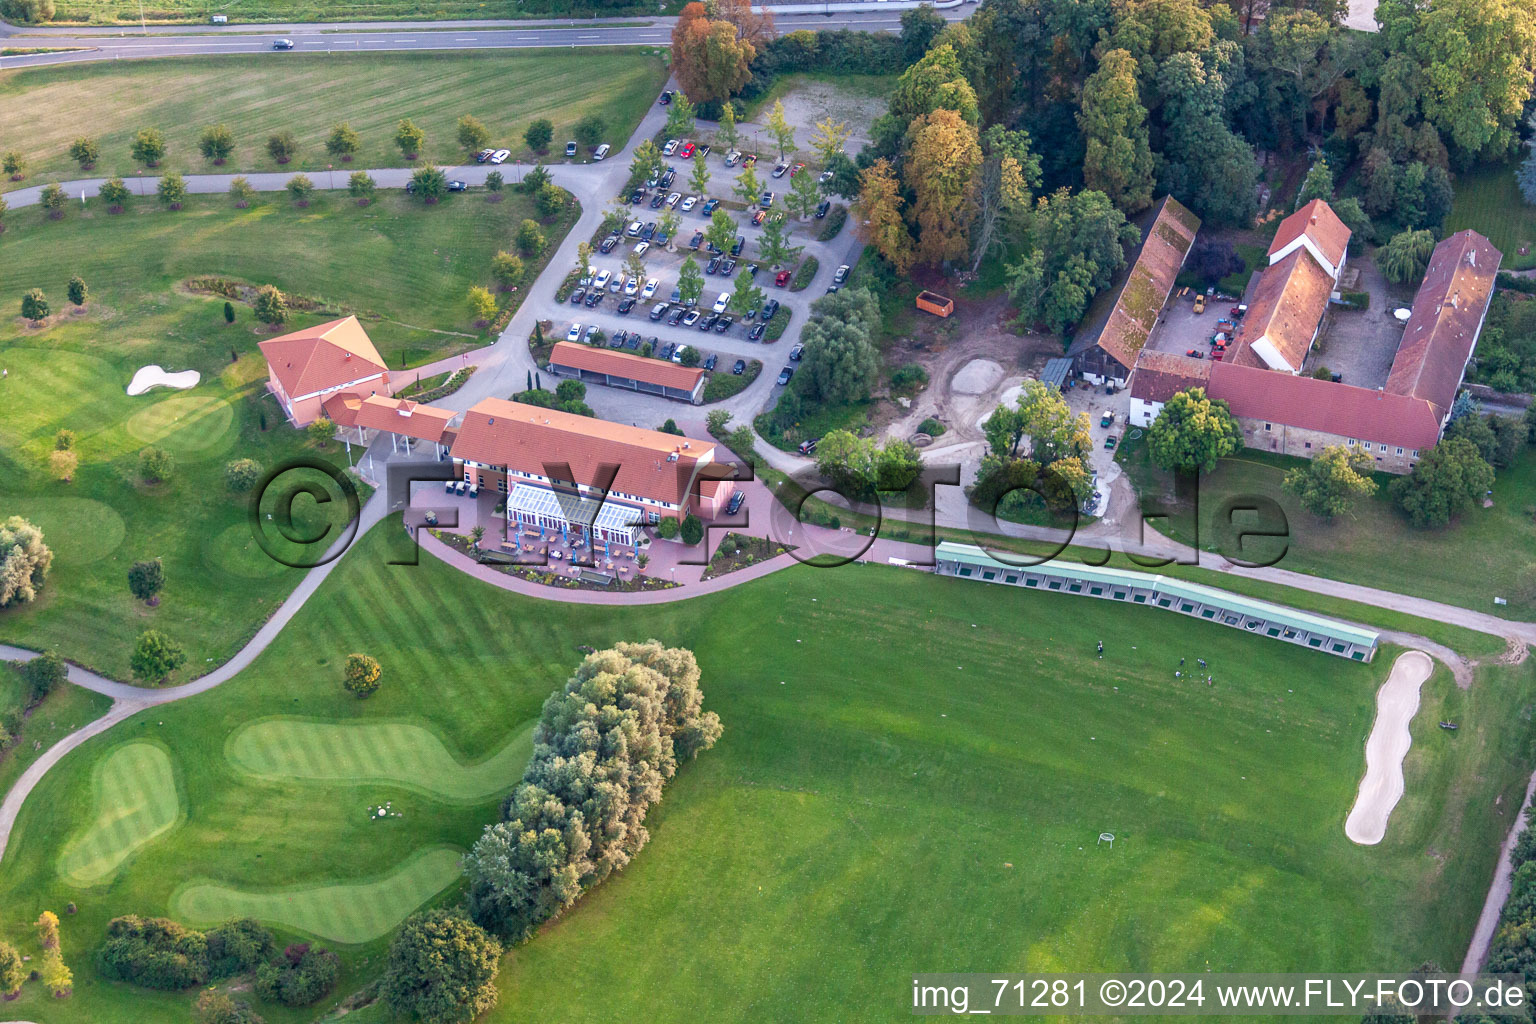 Gelände des Golfplatz Golfanlage Landgut Dreihof in Essingen im Bundesland Rheinland-Pfalz, Deutschland aus der Drohnenperspektive